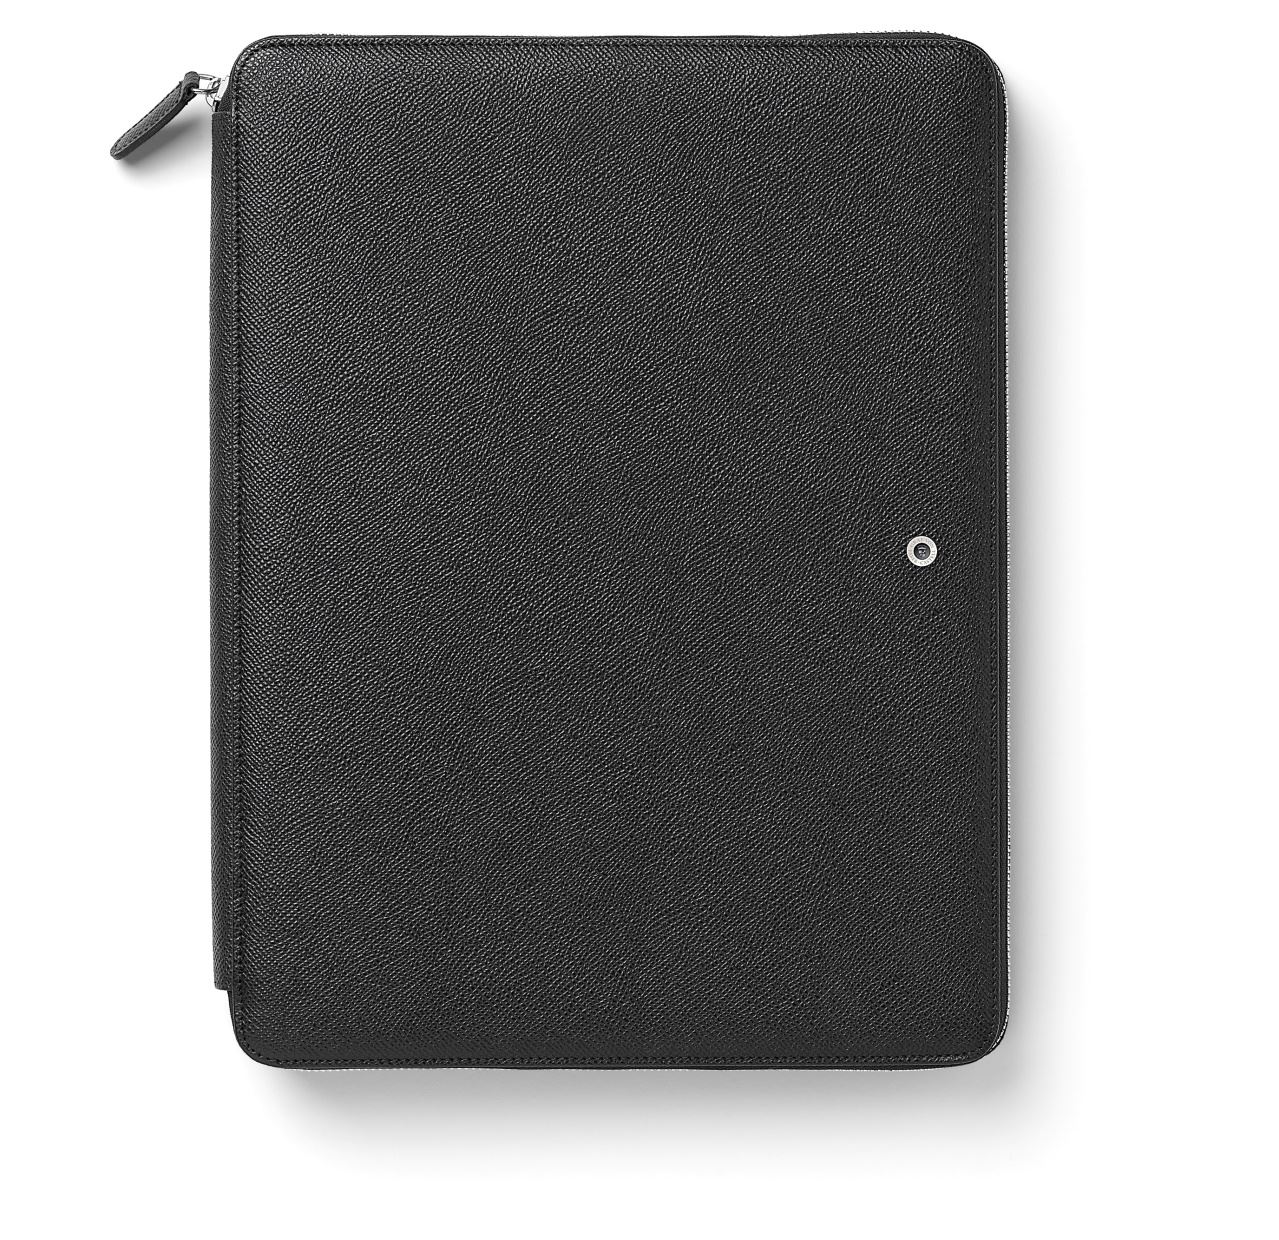 Graf-von-Faber-Castell - Conferencier A4 avec pochette pour tablette zippée, noir